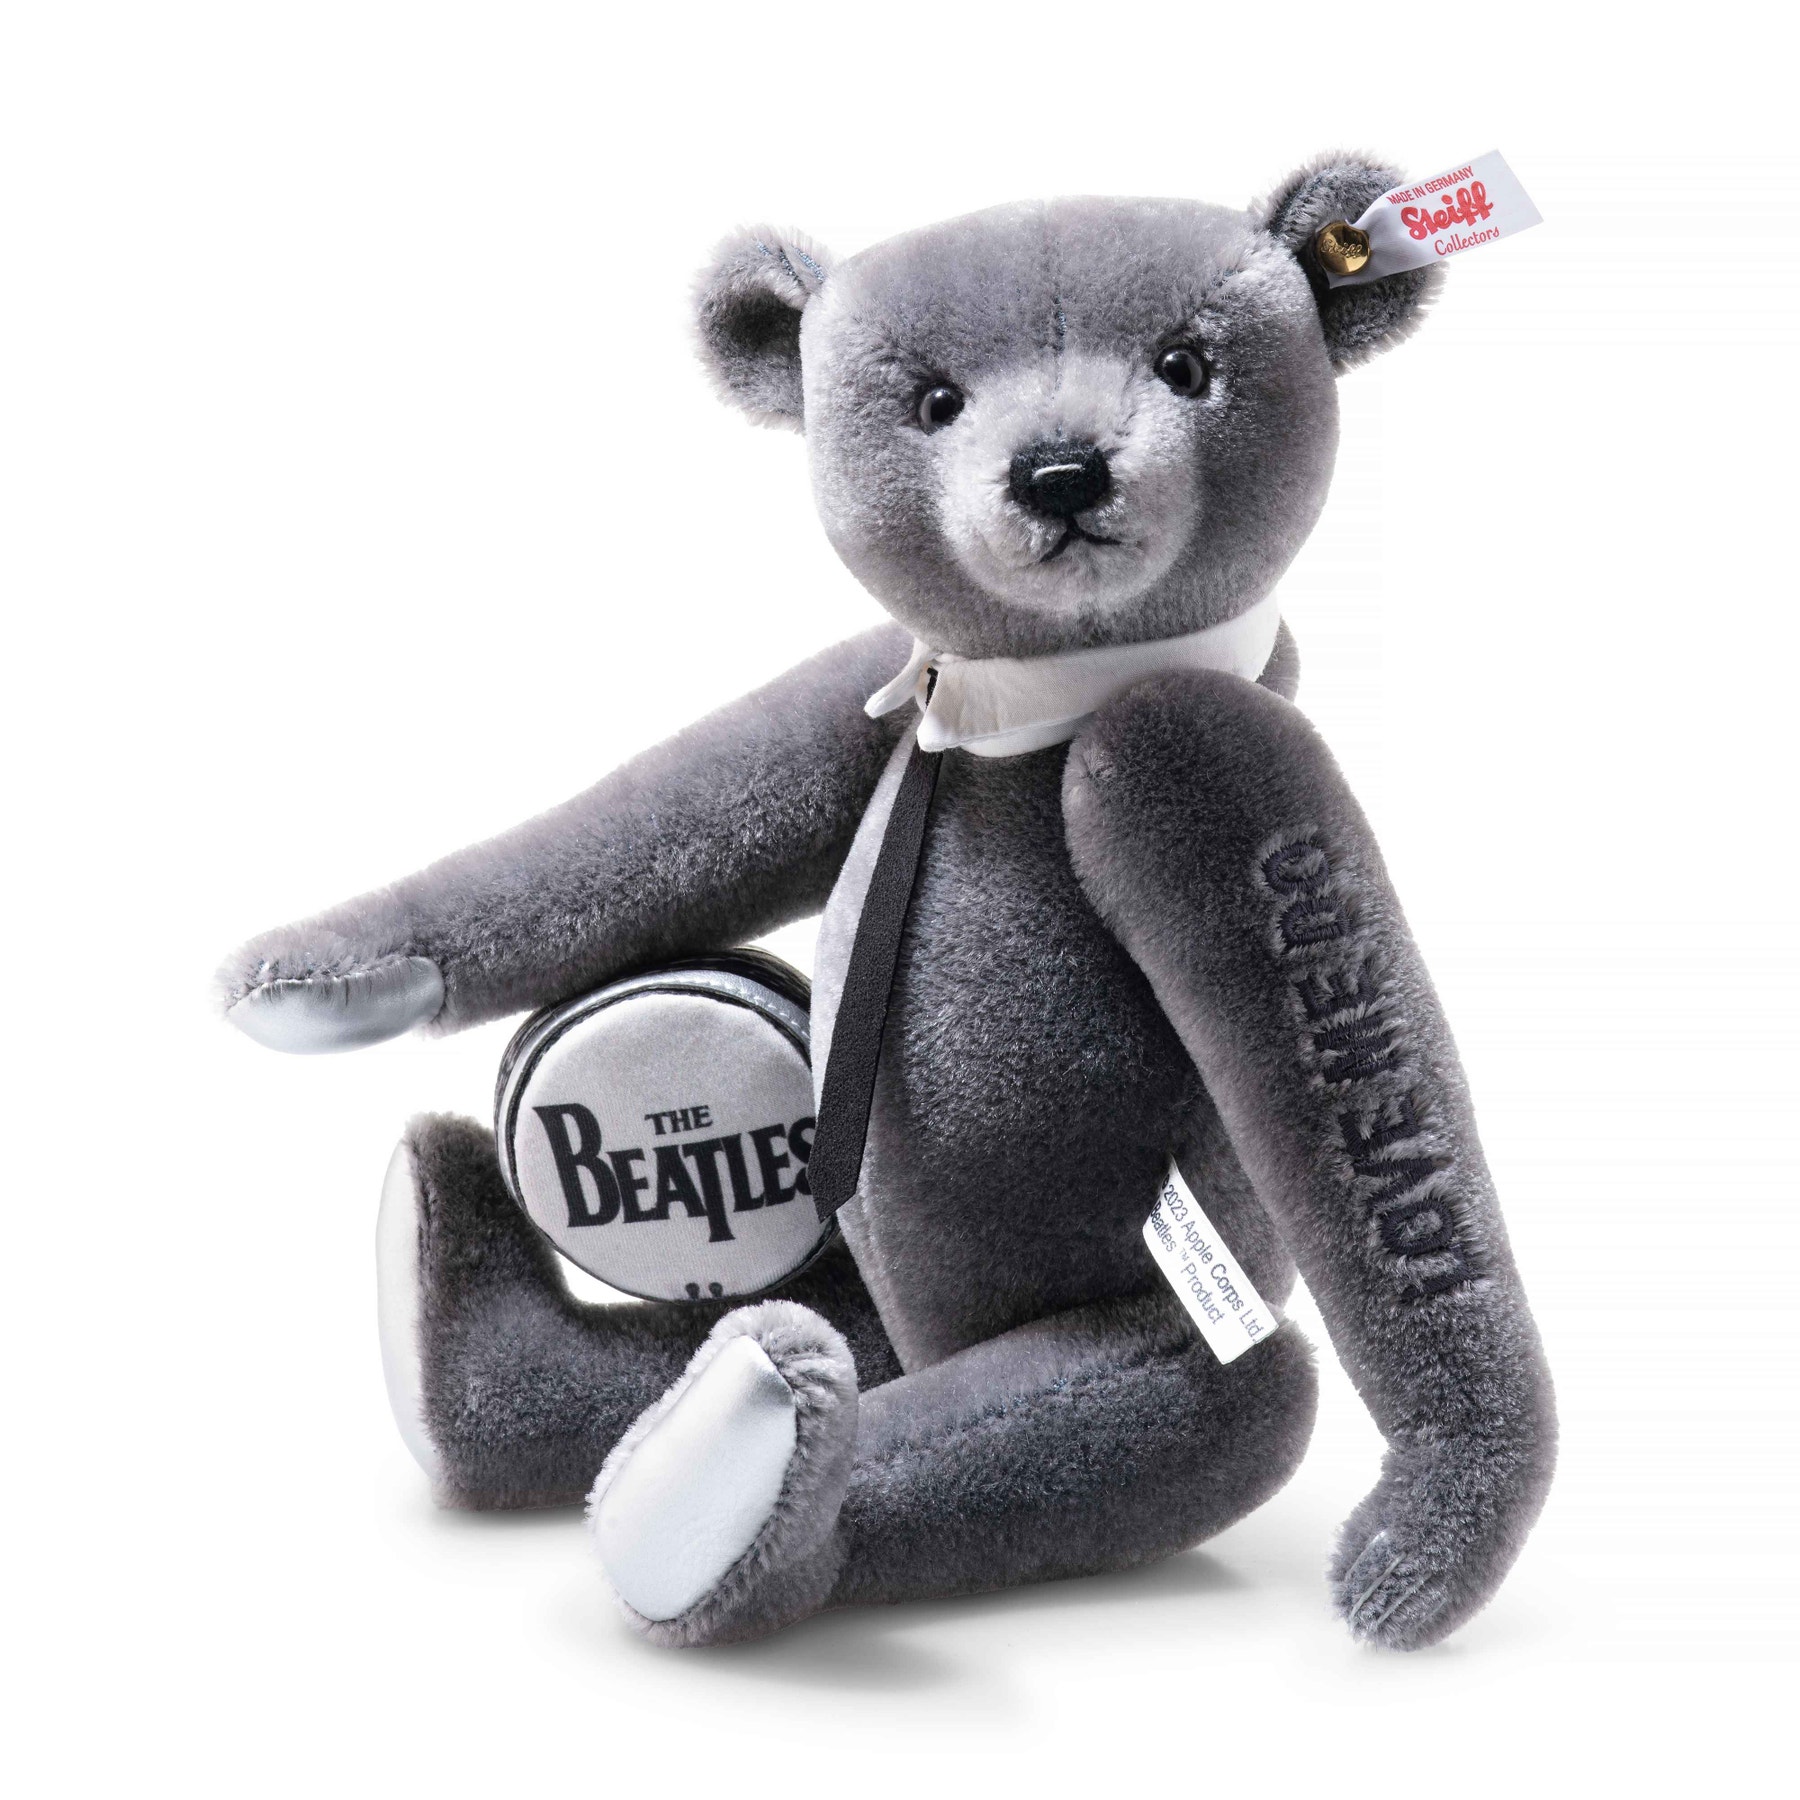 Steiff Rocks! The Beatles “Love Me Do” Limited Edition Teddy Bear